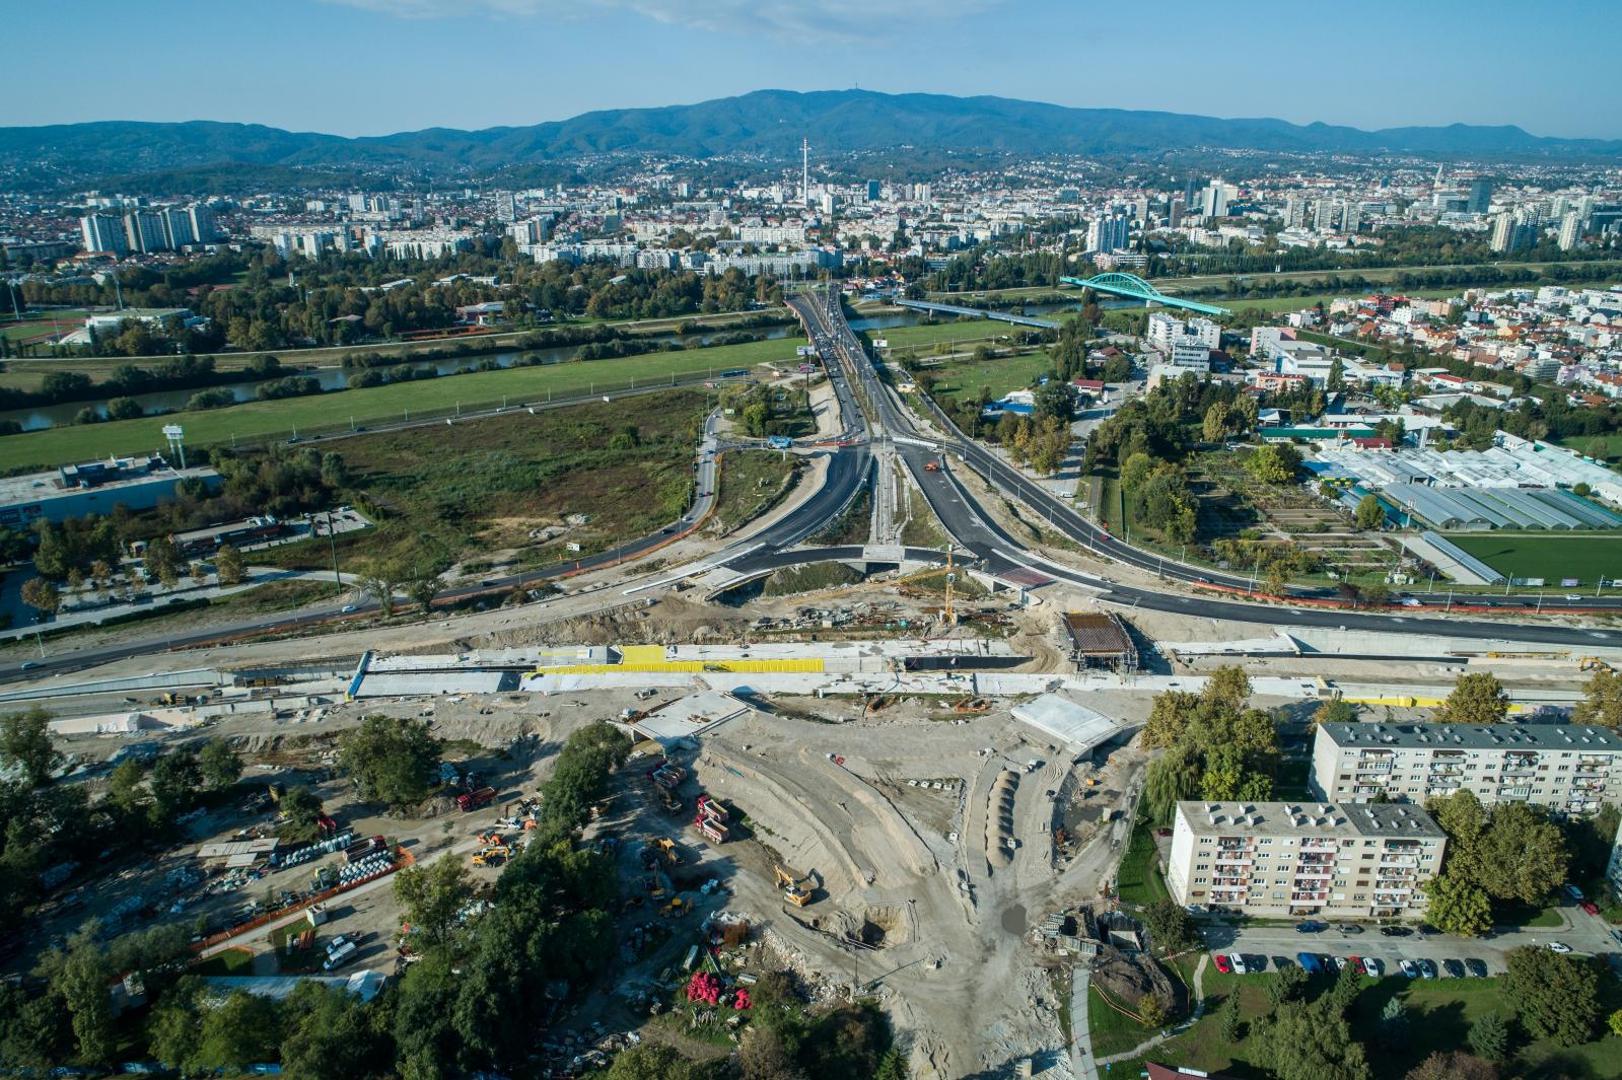 Rekonstrukcija Remetinečkog rotora jedan je od najvećih infrastrukturnih projekata u cijeloj zemlji, a svakako najznačajniji projekt u Zagrebu.